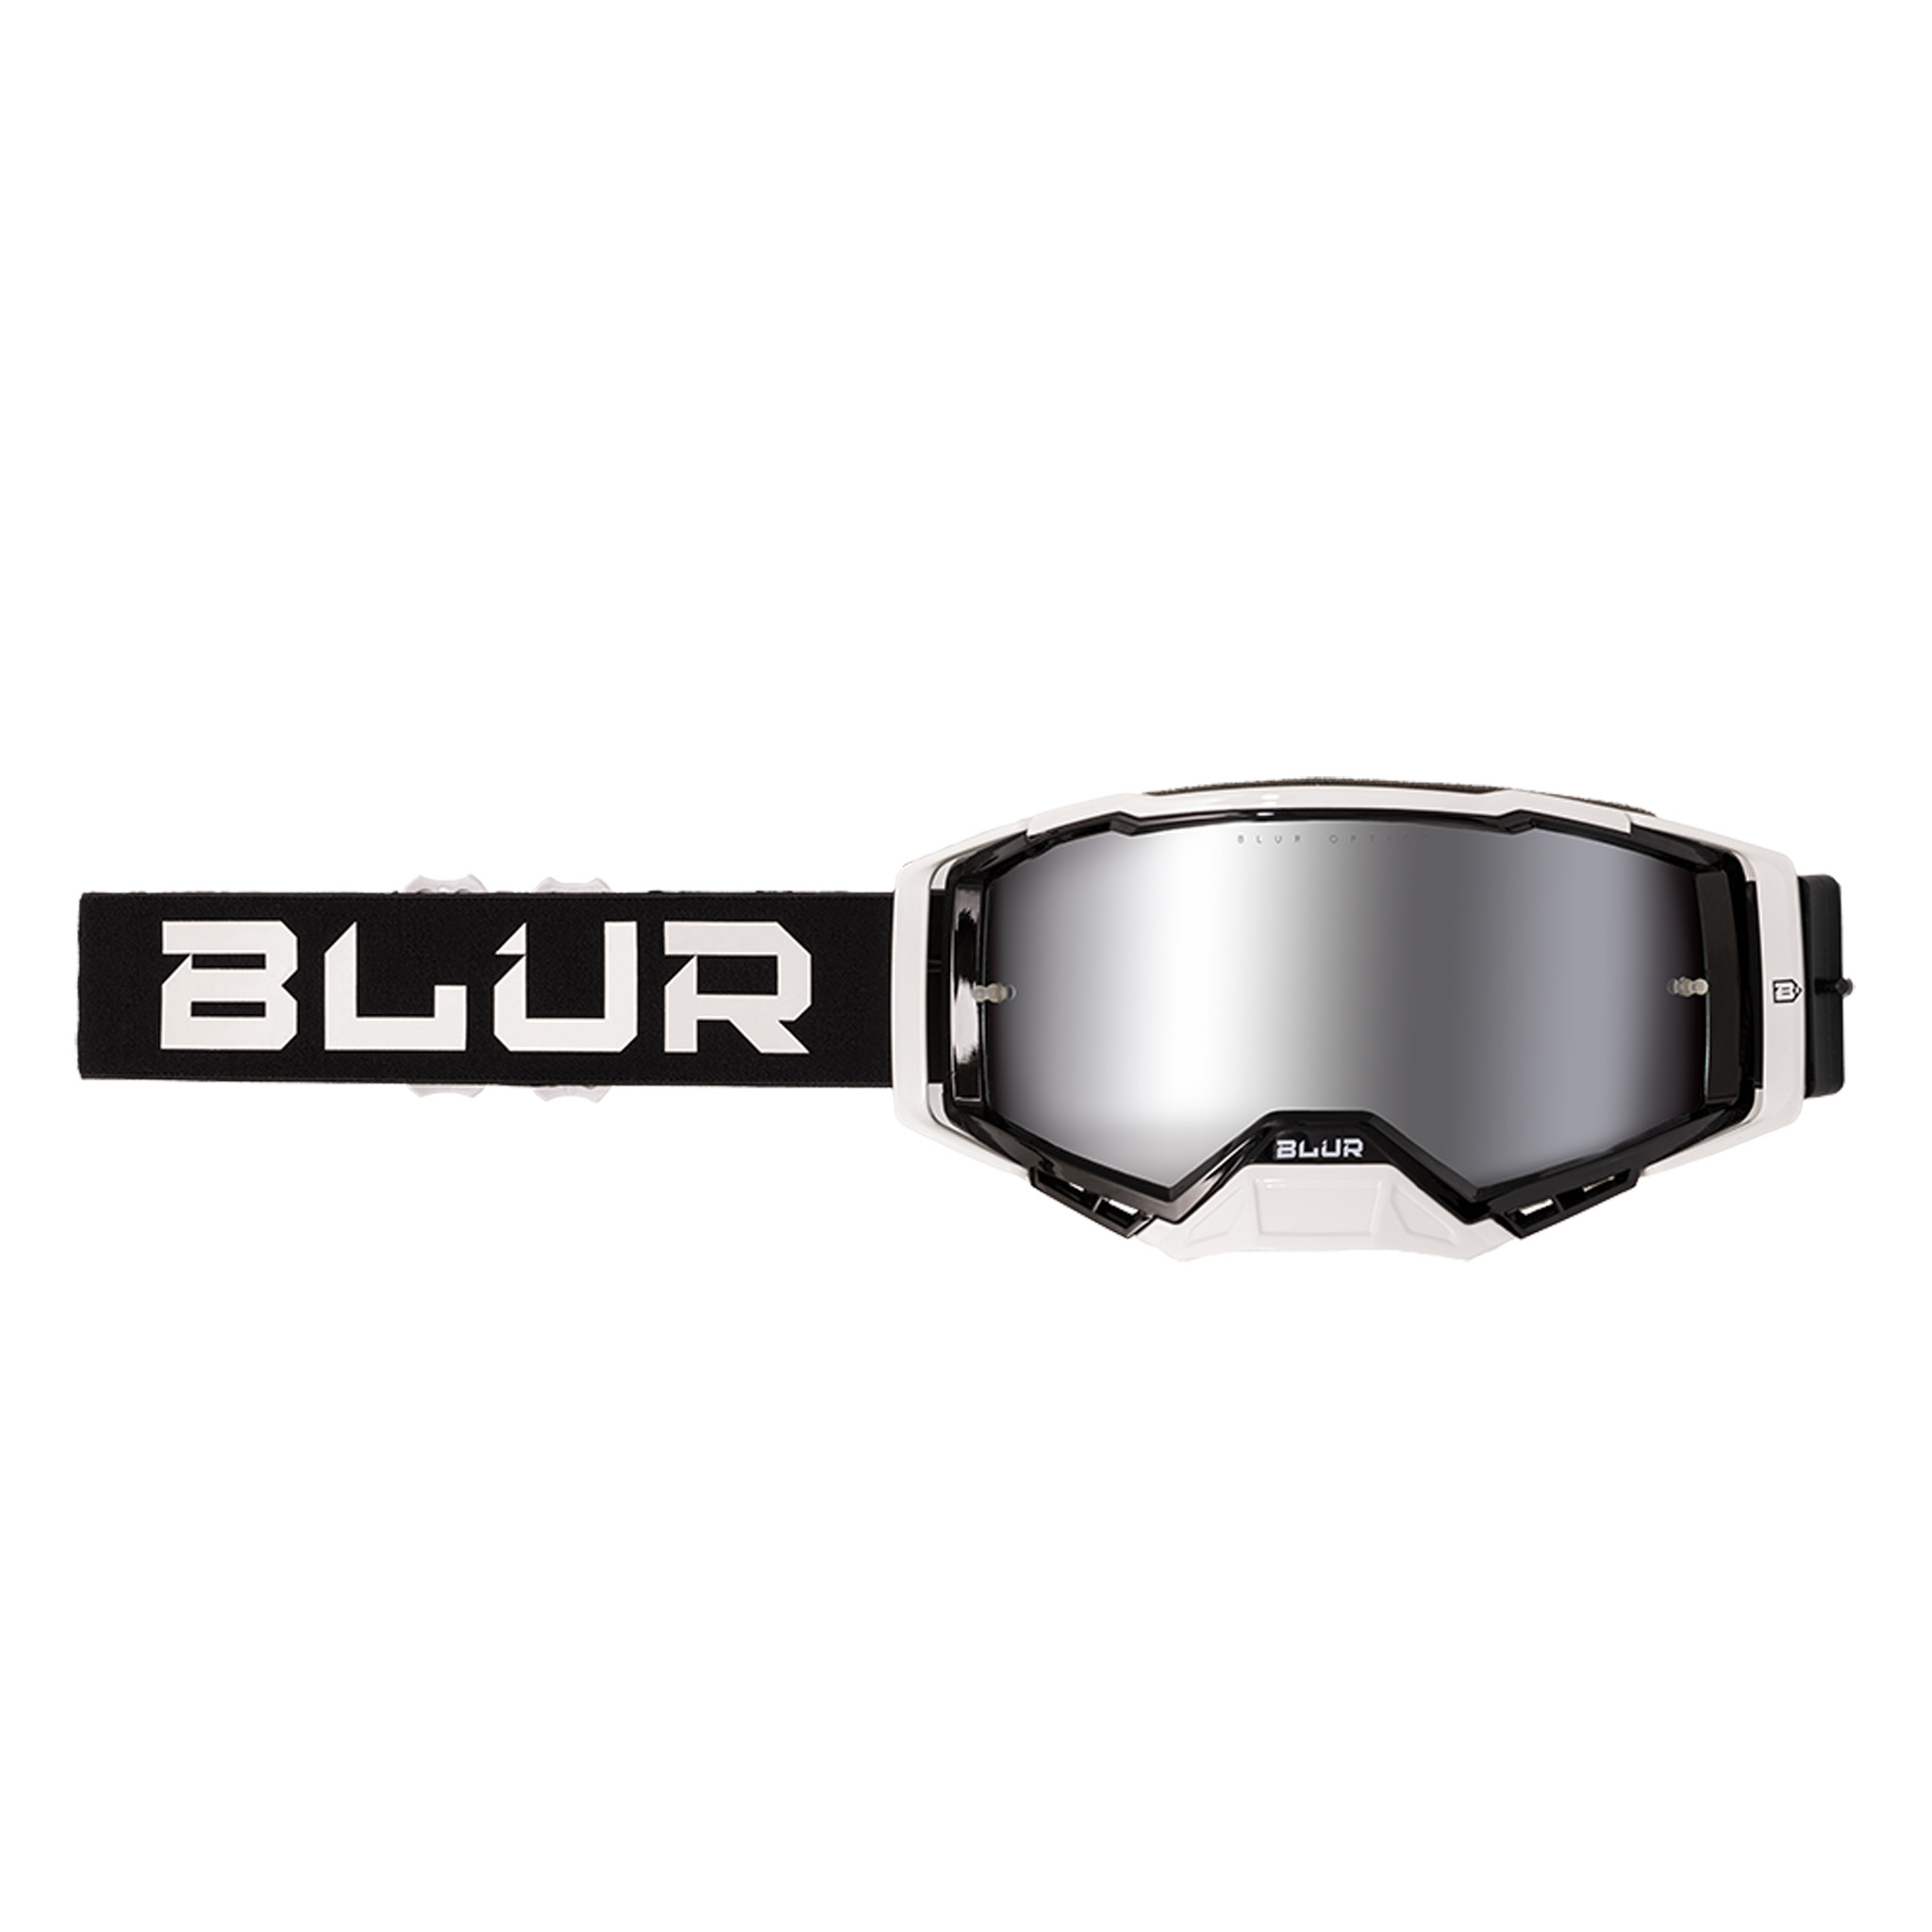 Blur Goggles B40 Goggle, Black/White, Silver Mirror Lens